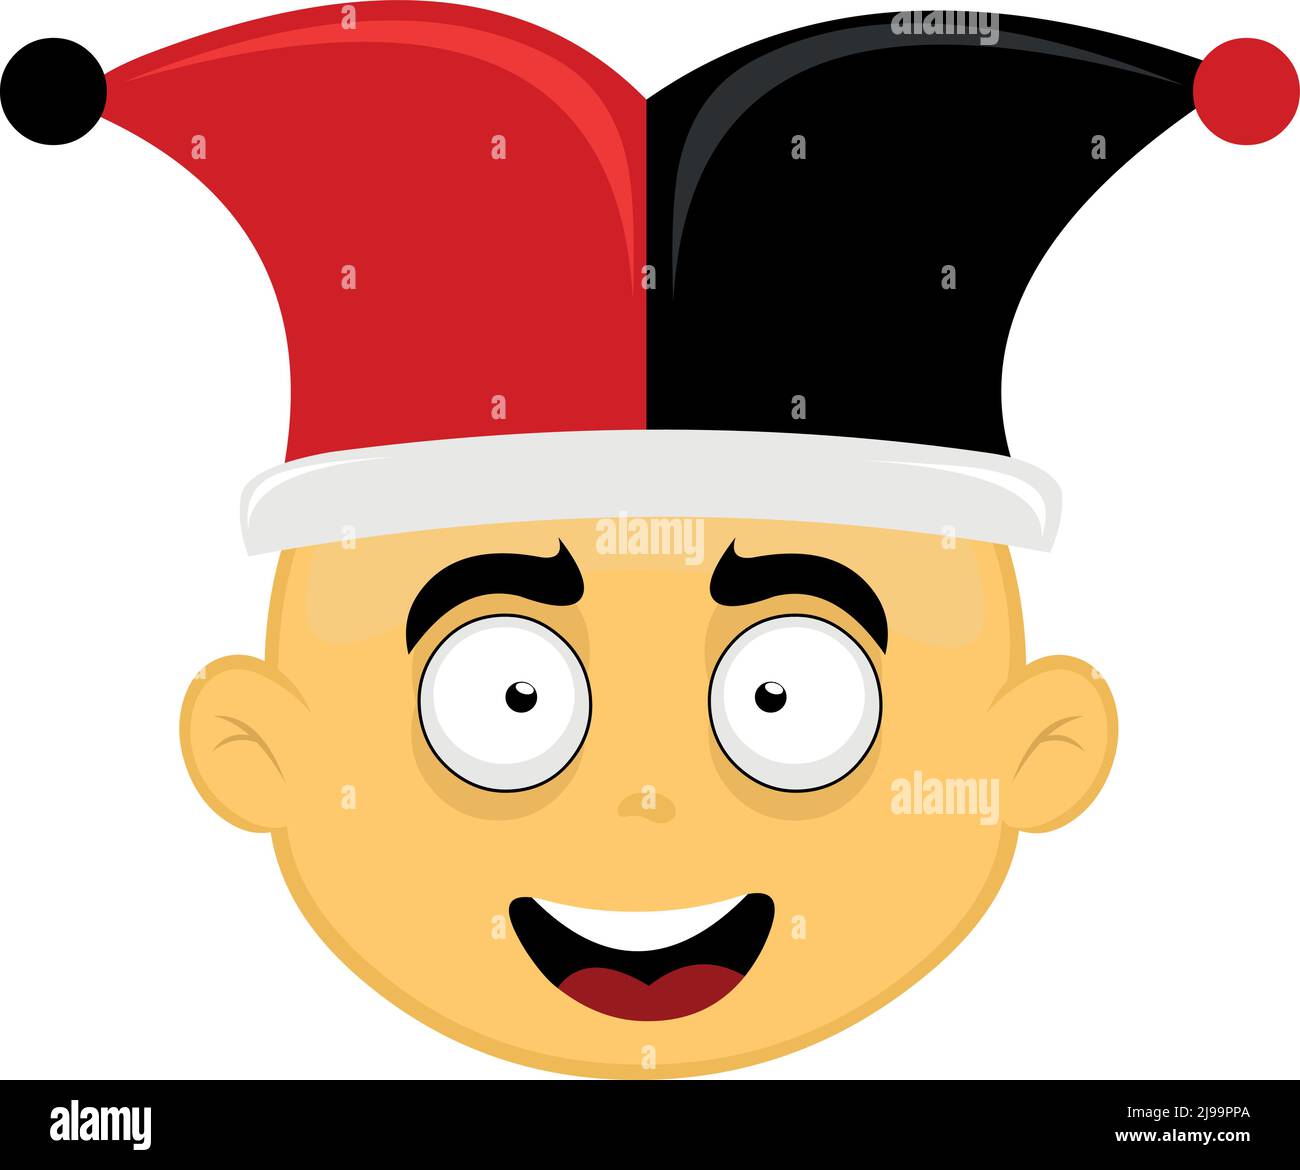 Vektor-Illustration des Gesichts einer gelben Zeichentrickfigur mit einem schwarzen und roten Harlekin-Narrenhut Stock Vektor